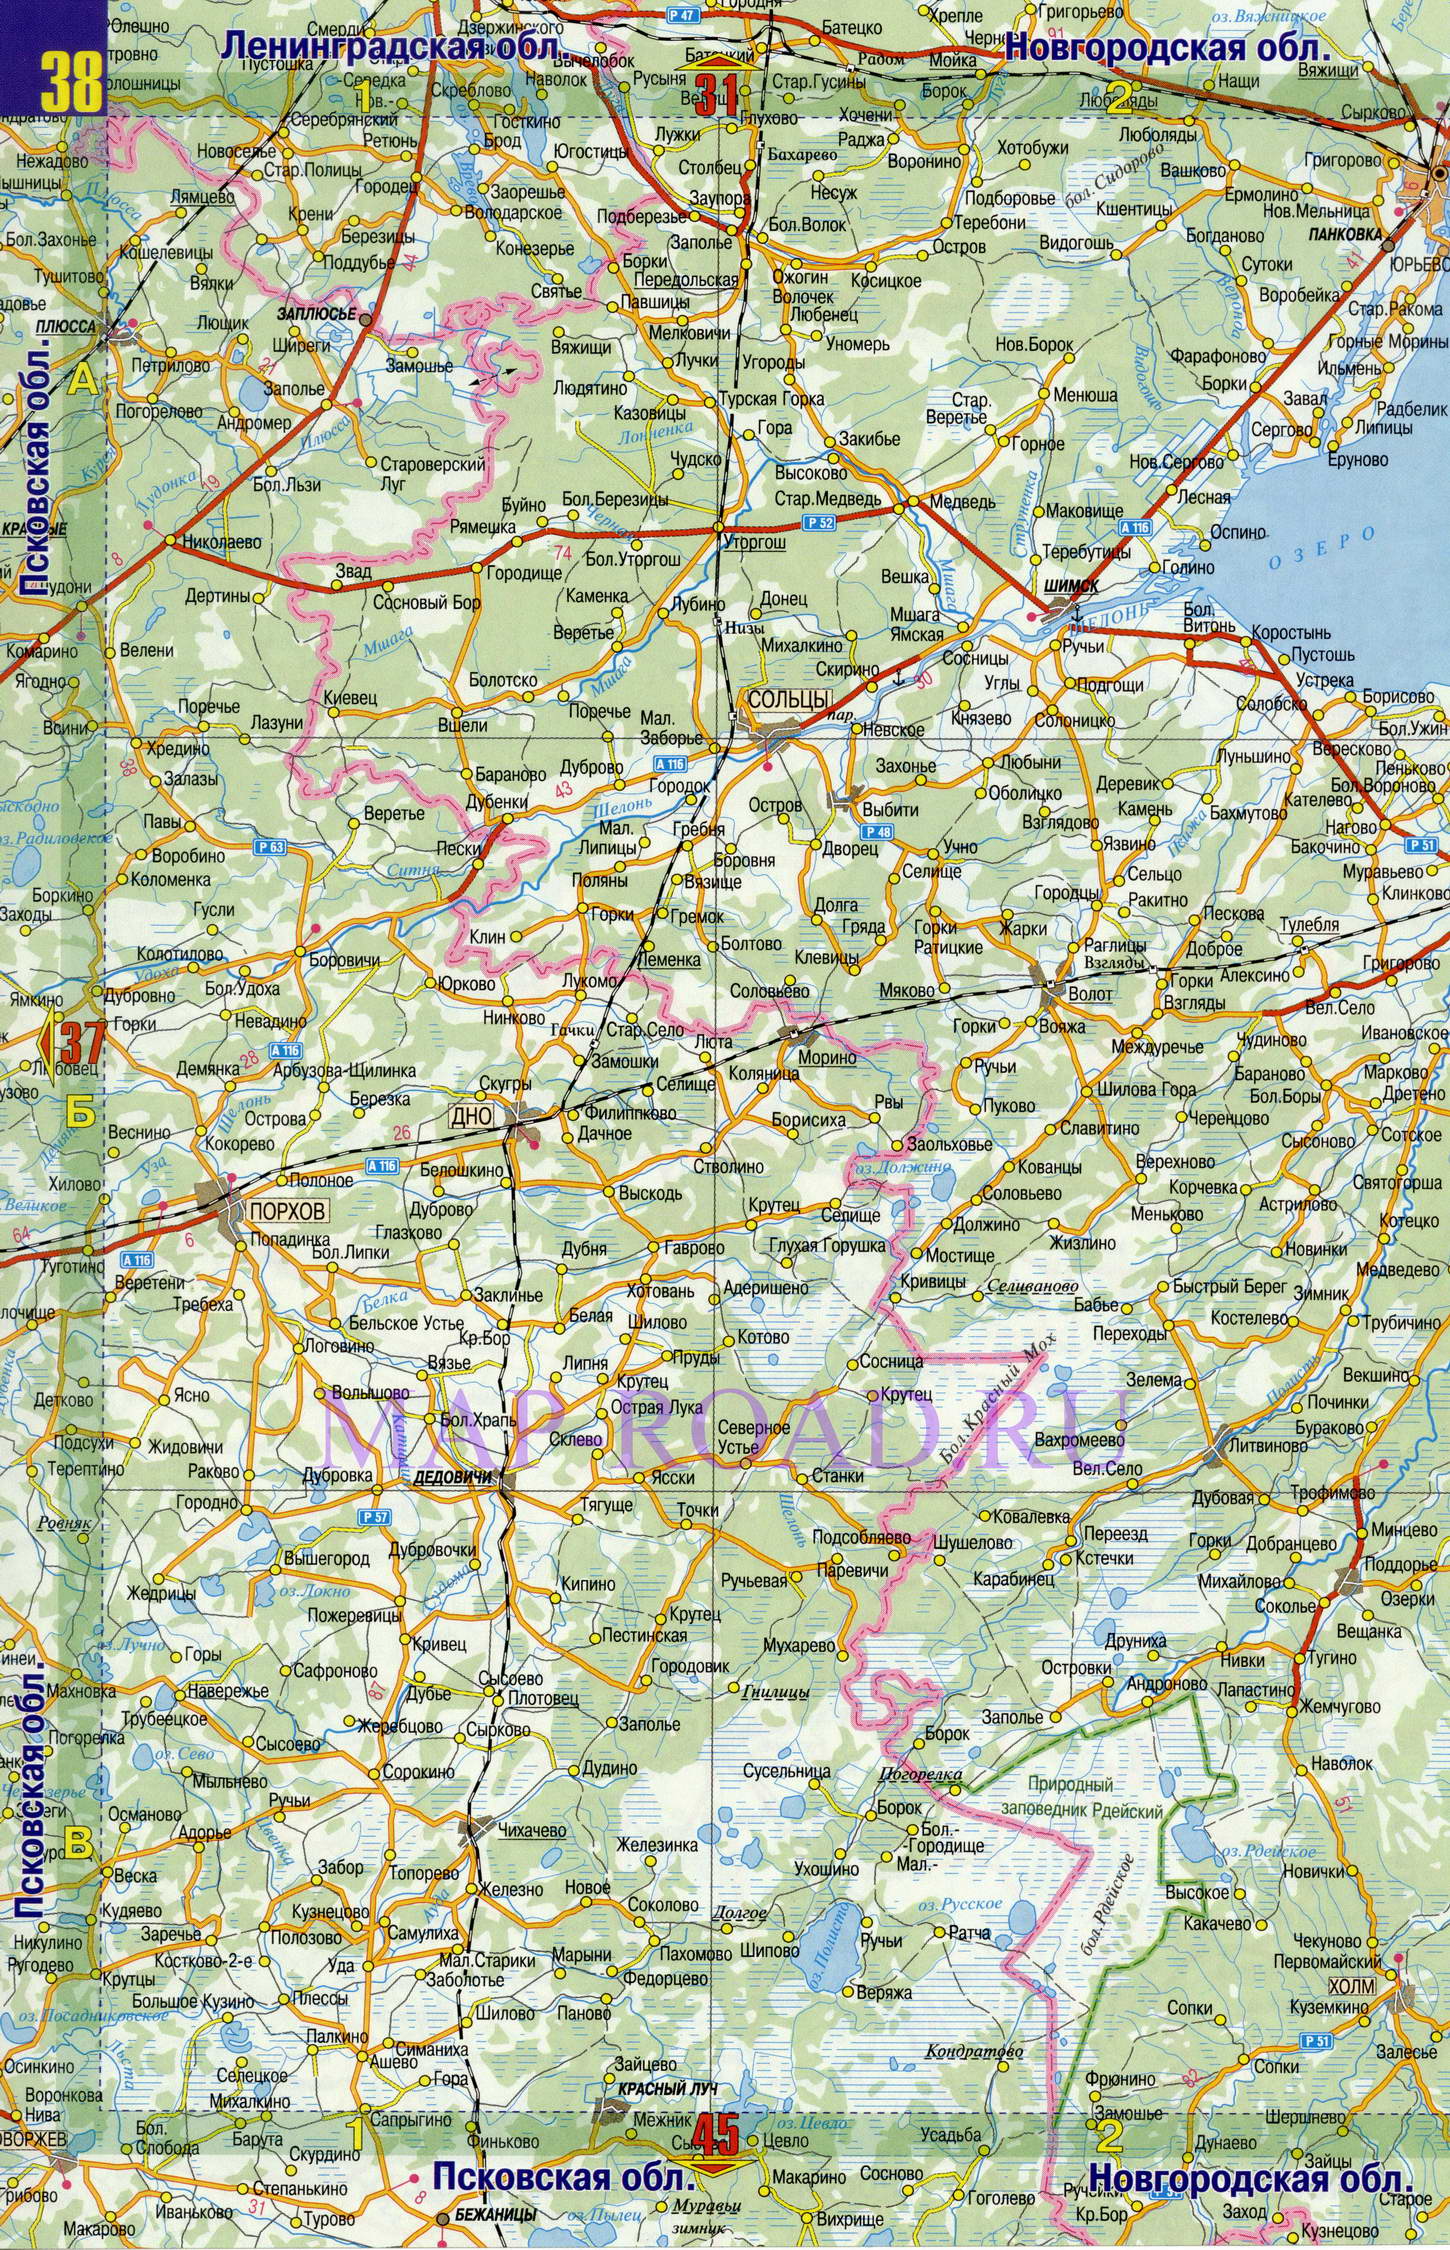 Подробная карта дорог Новгородской области. Карта автомобильных дорог - Новгородская область, A0 - 